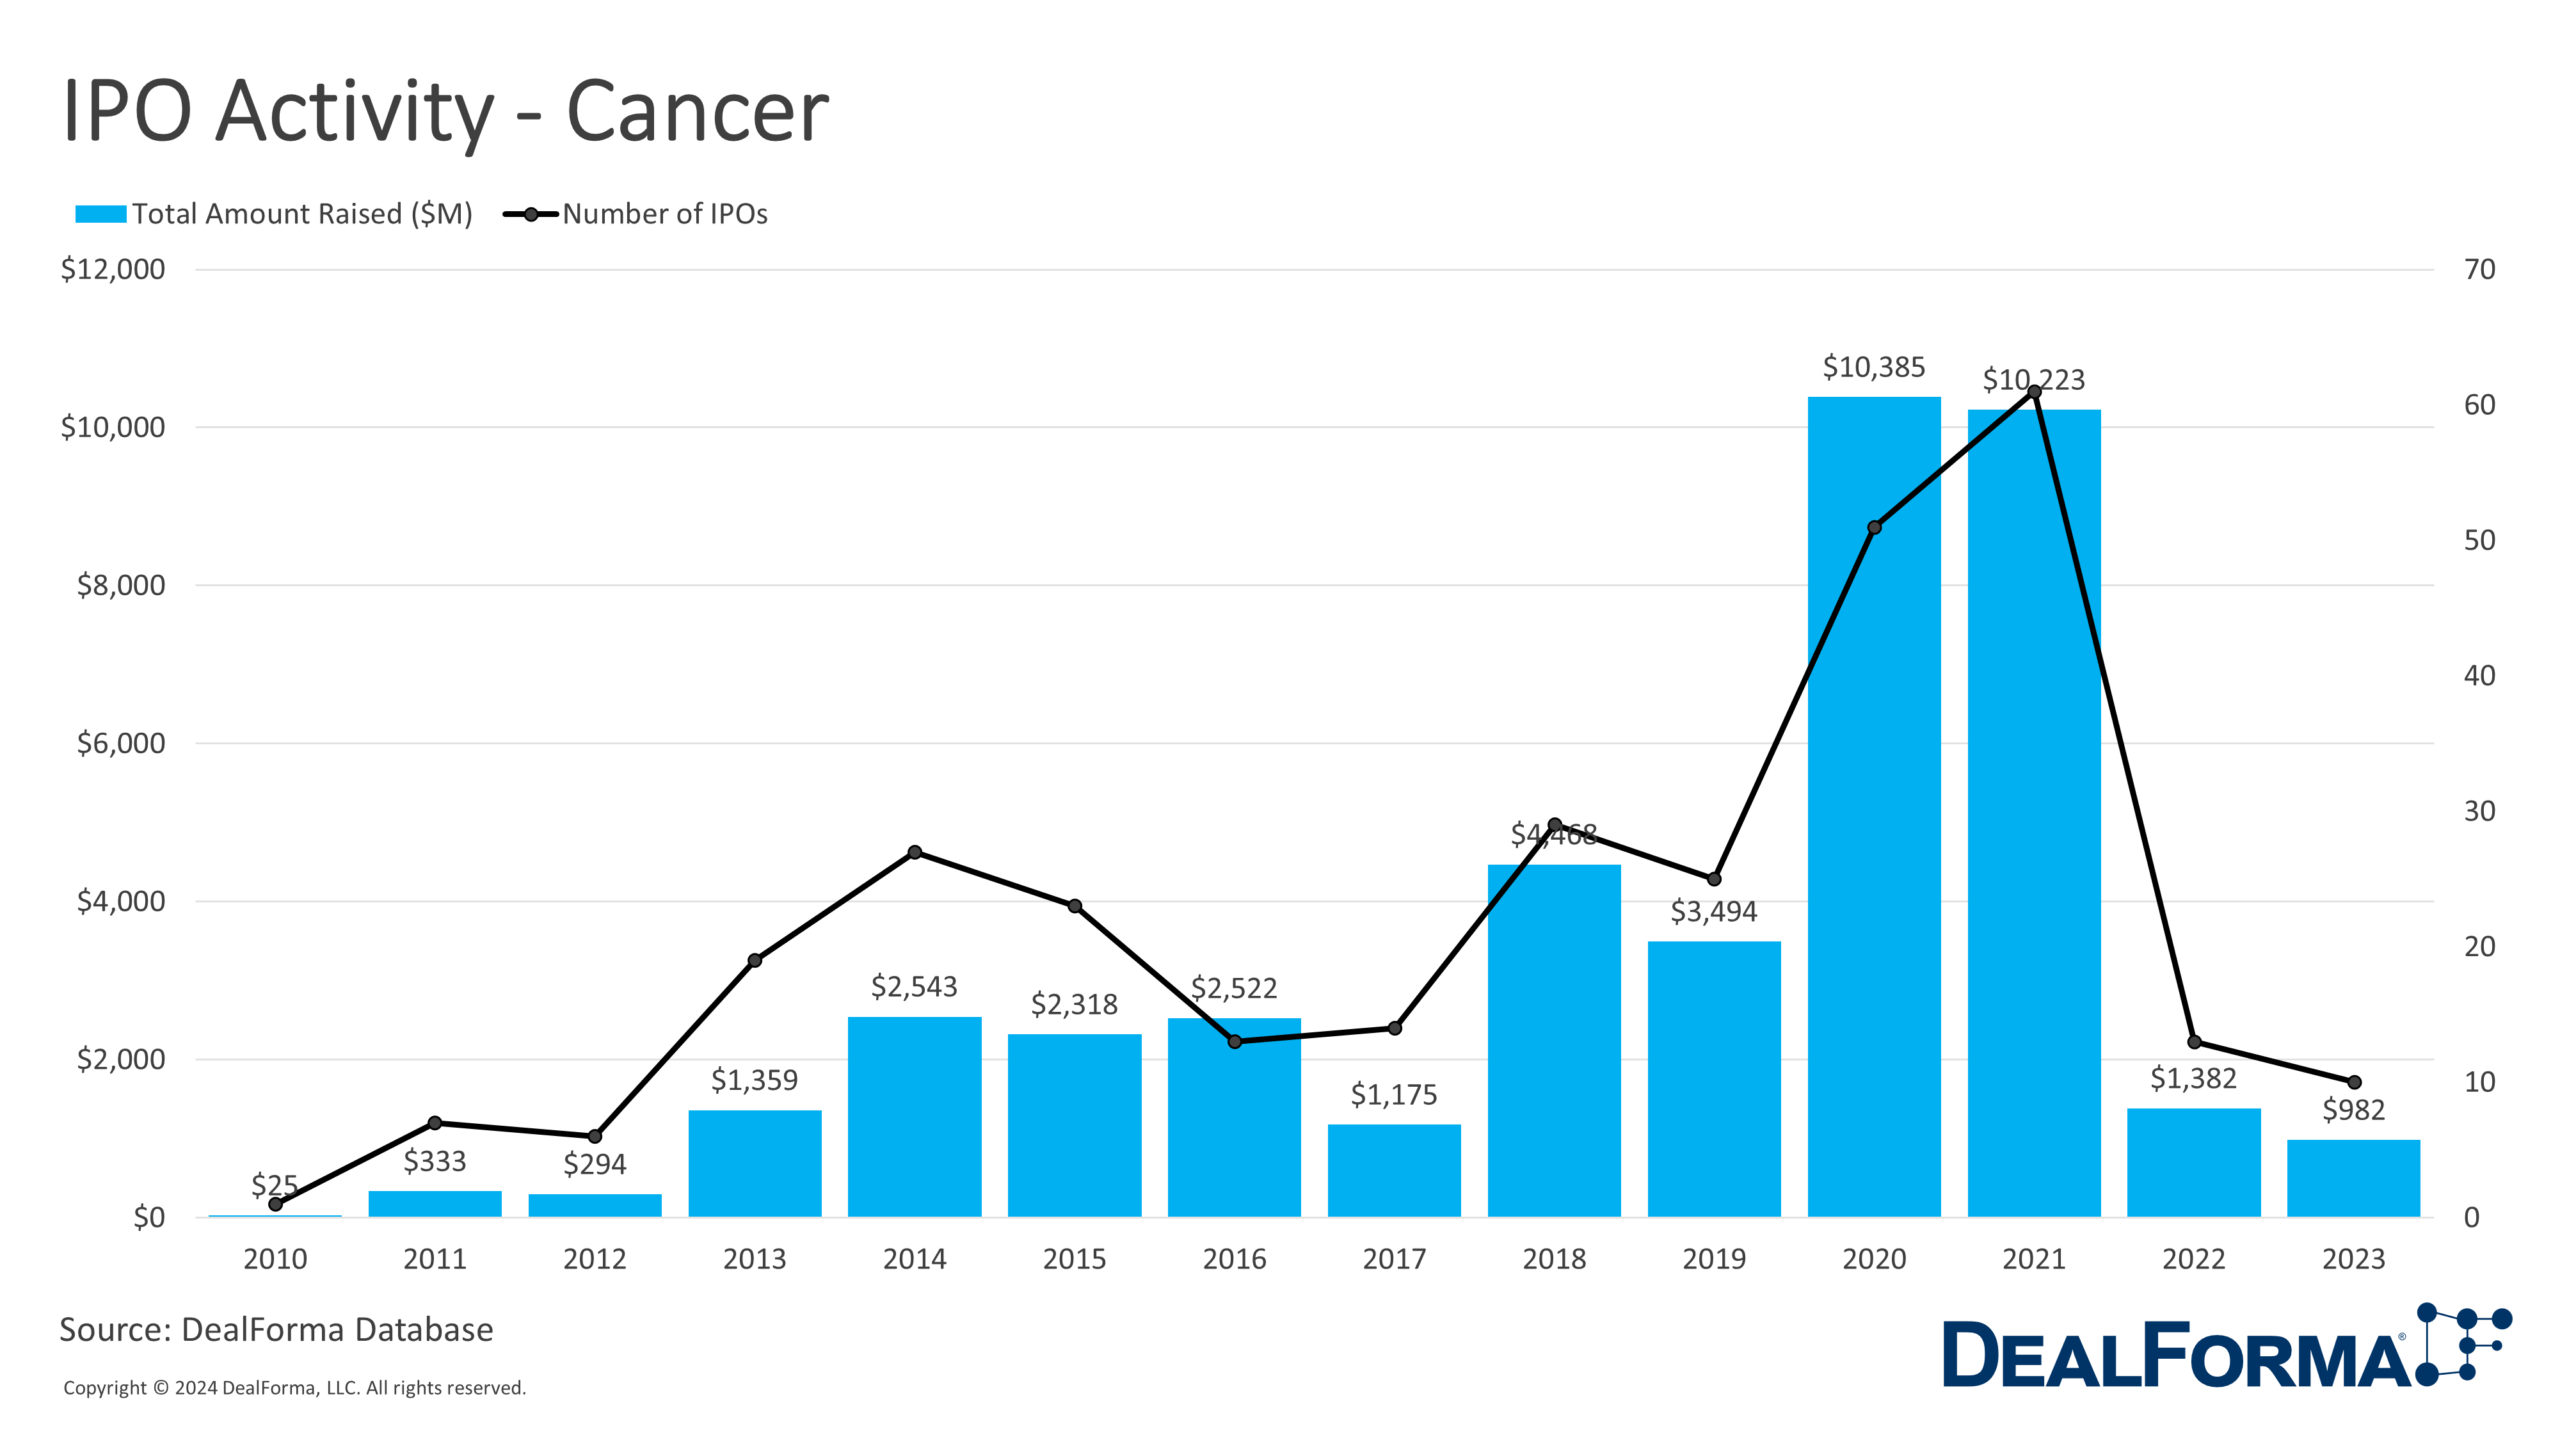 IPO Activity - Cancer - DealForma